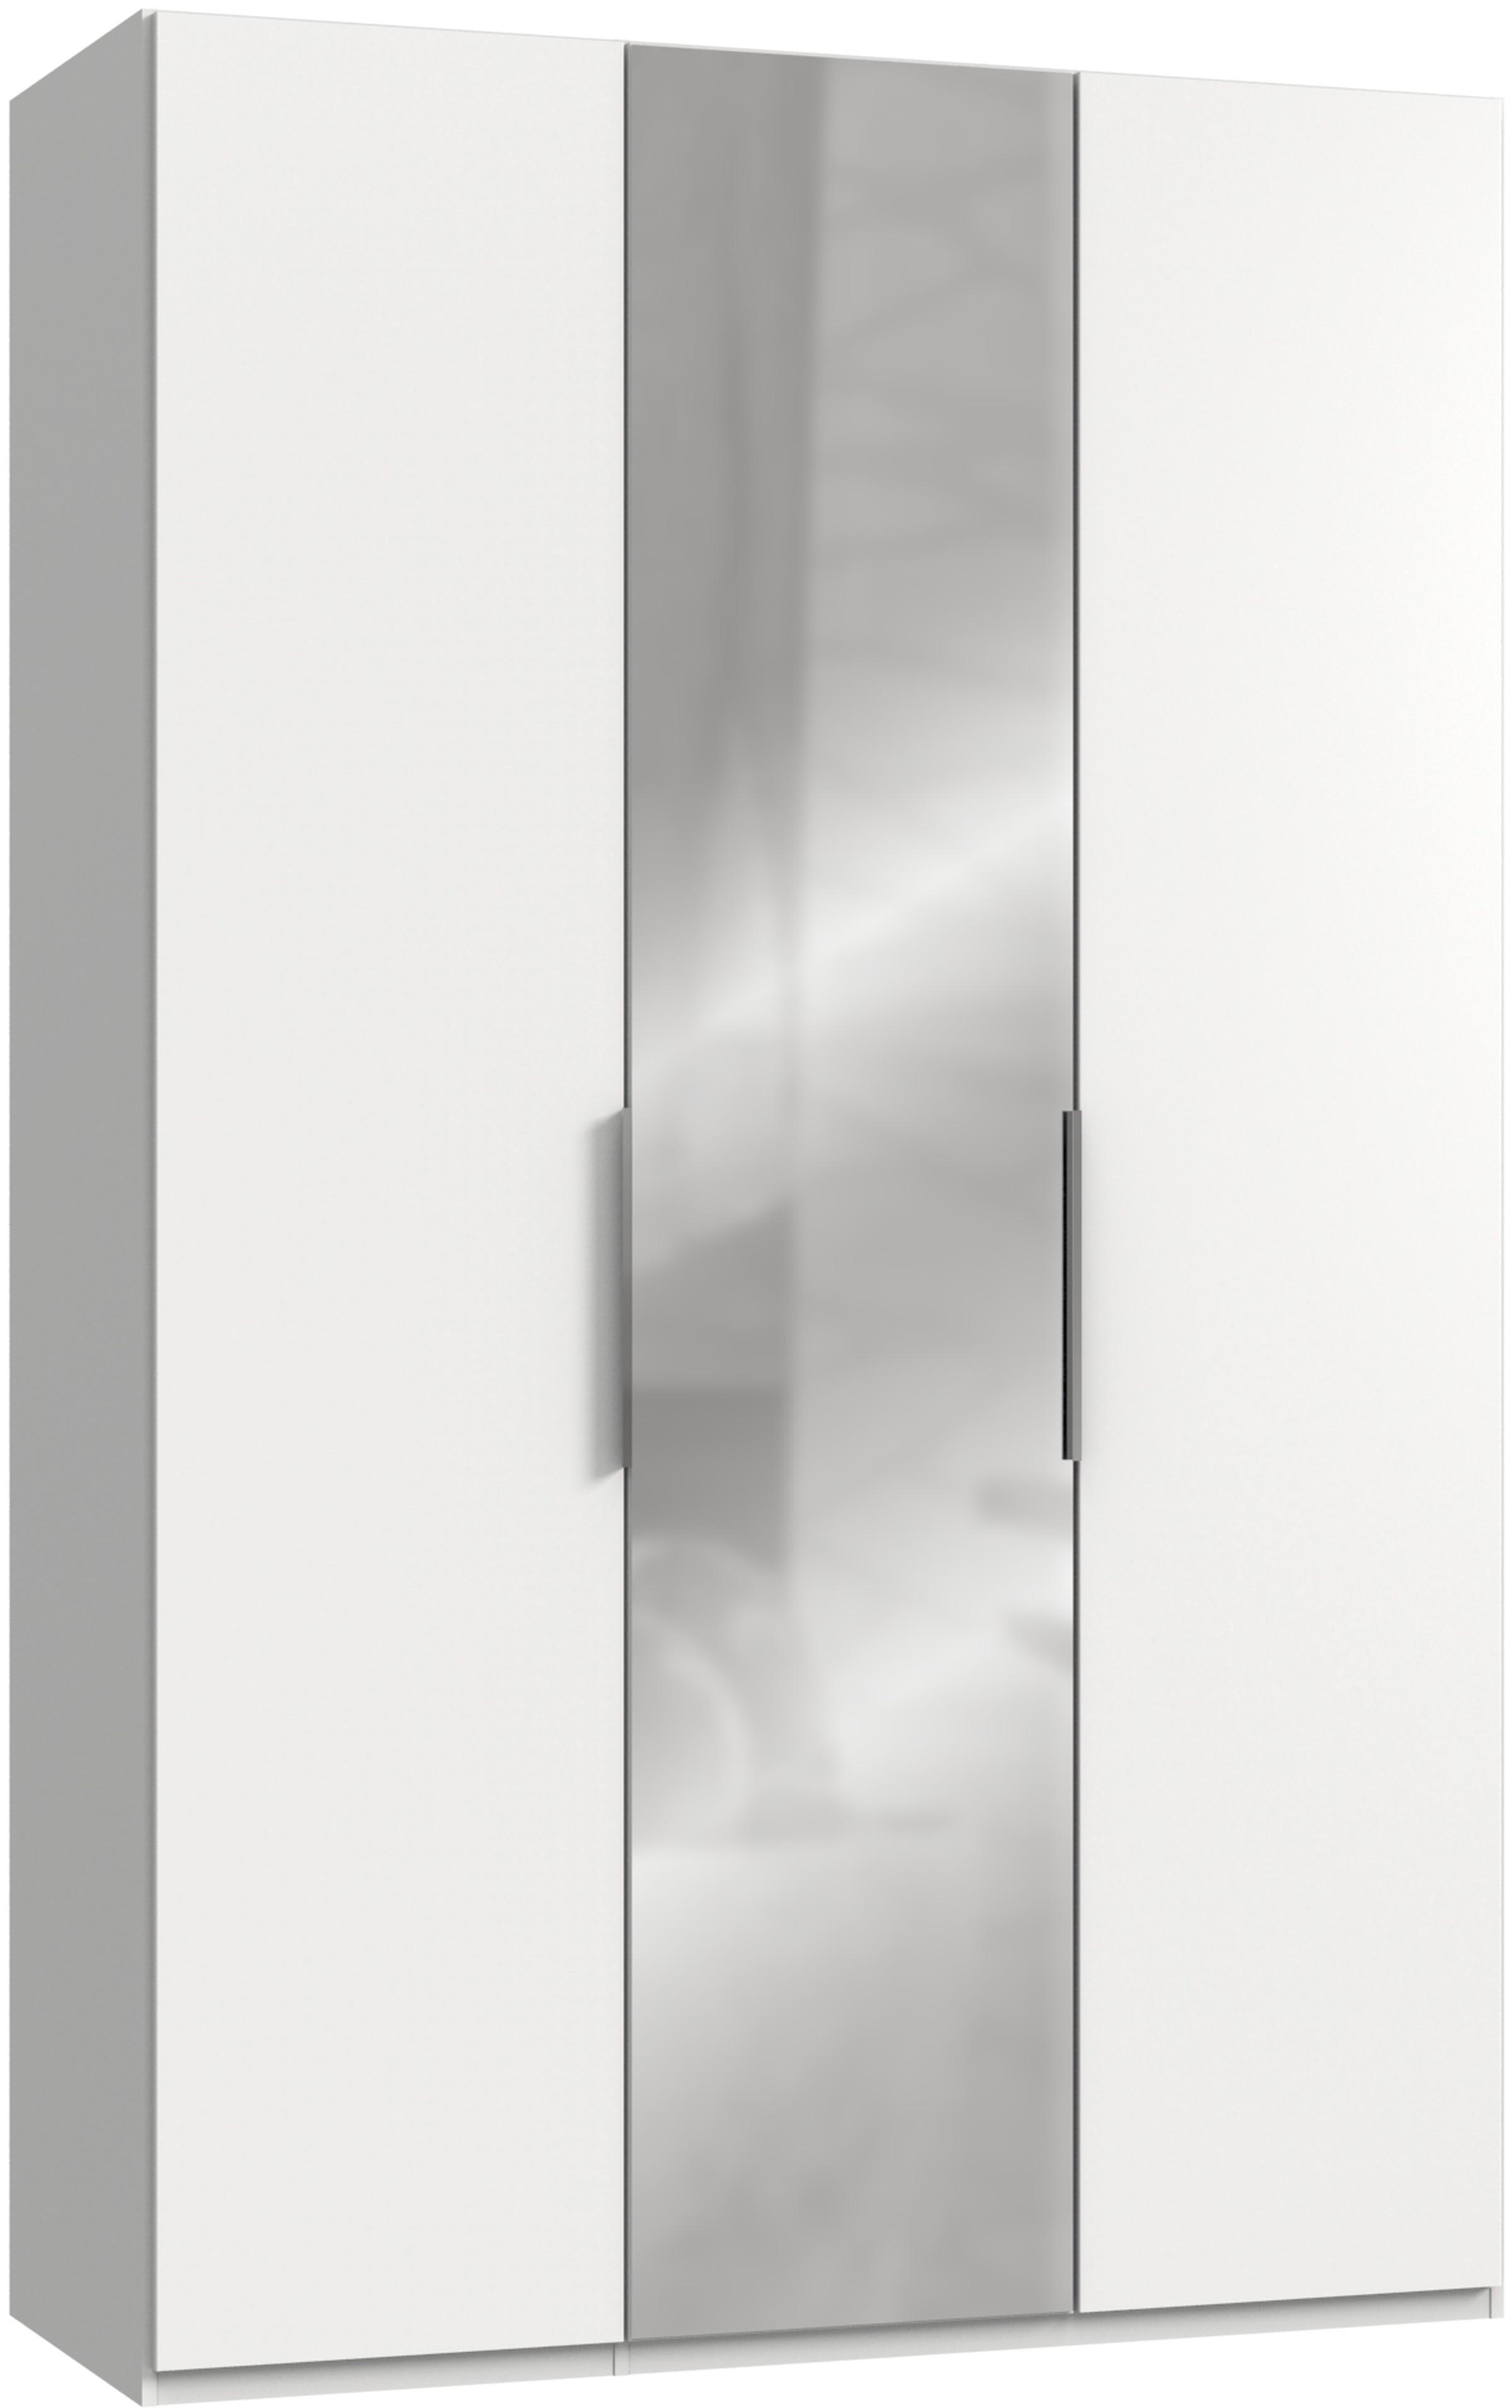 Drehtürenschrank B: 150 cm Level Weiß - Weiß, MODERN, Holzwerkstoff (150/236/58cm) - MID.YOU